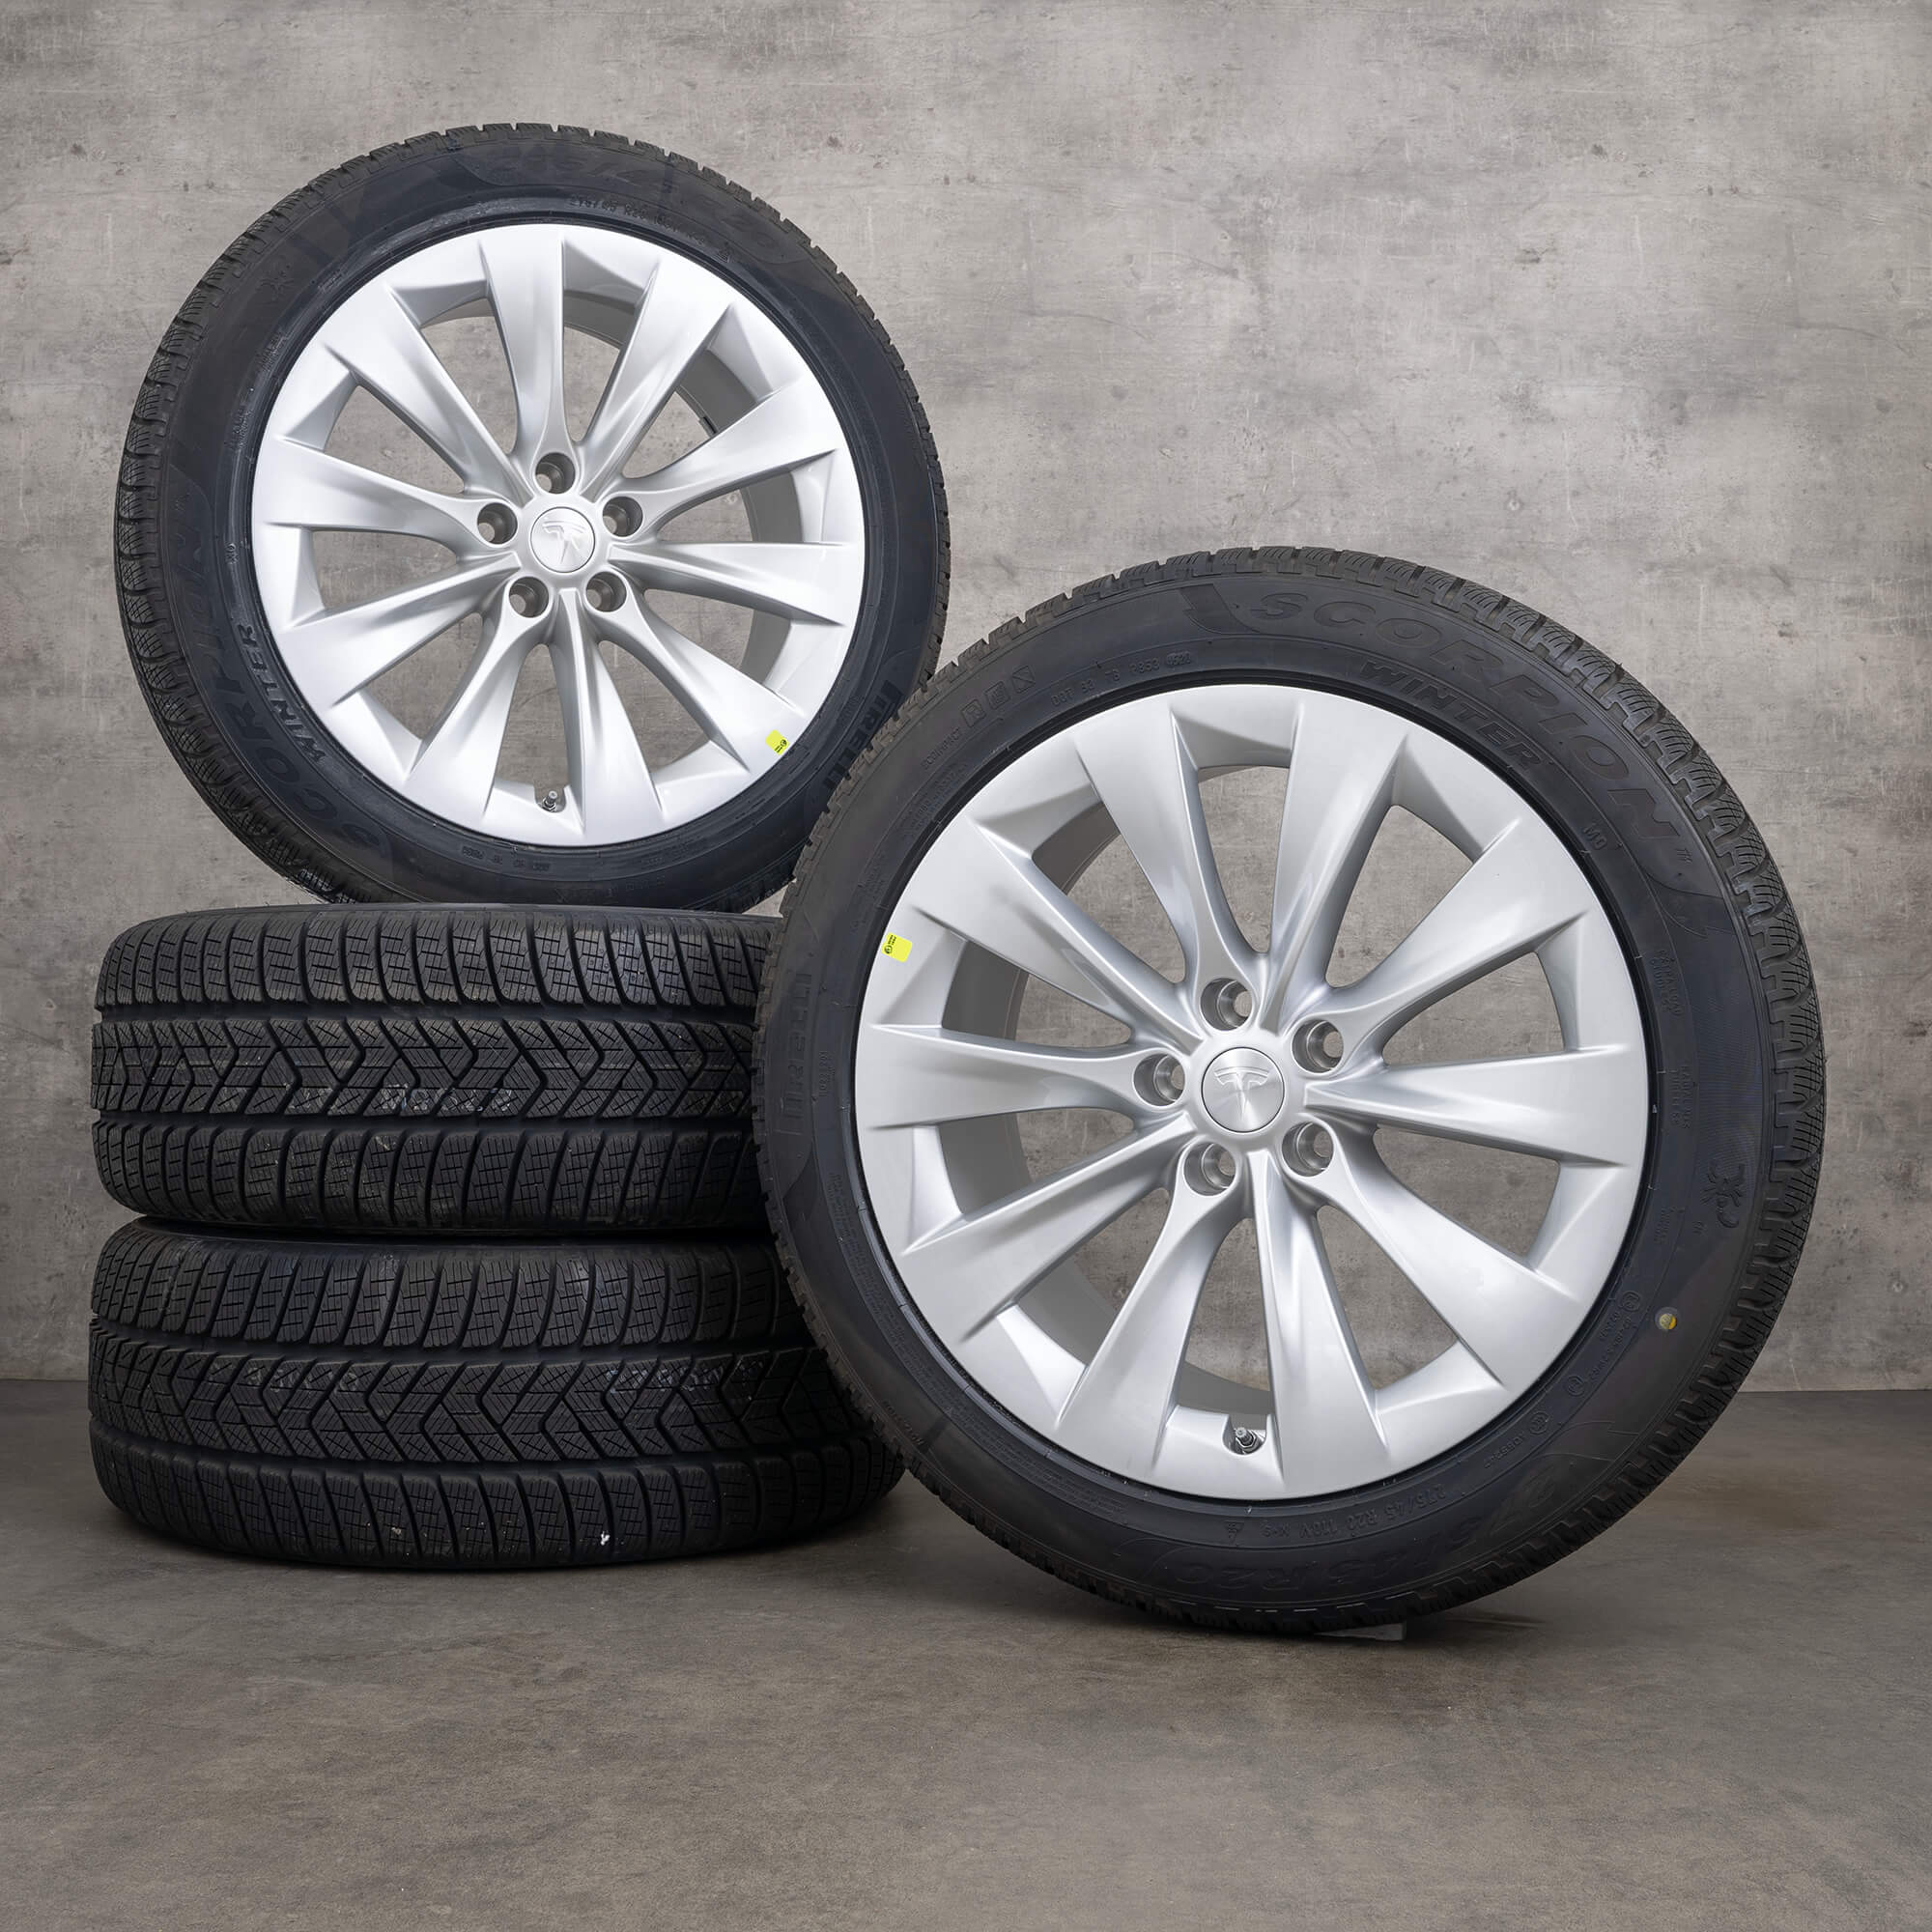 OEM Tesla Model X winter wheels 20 inch rims tires silver